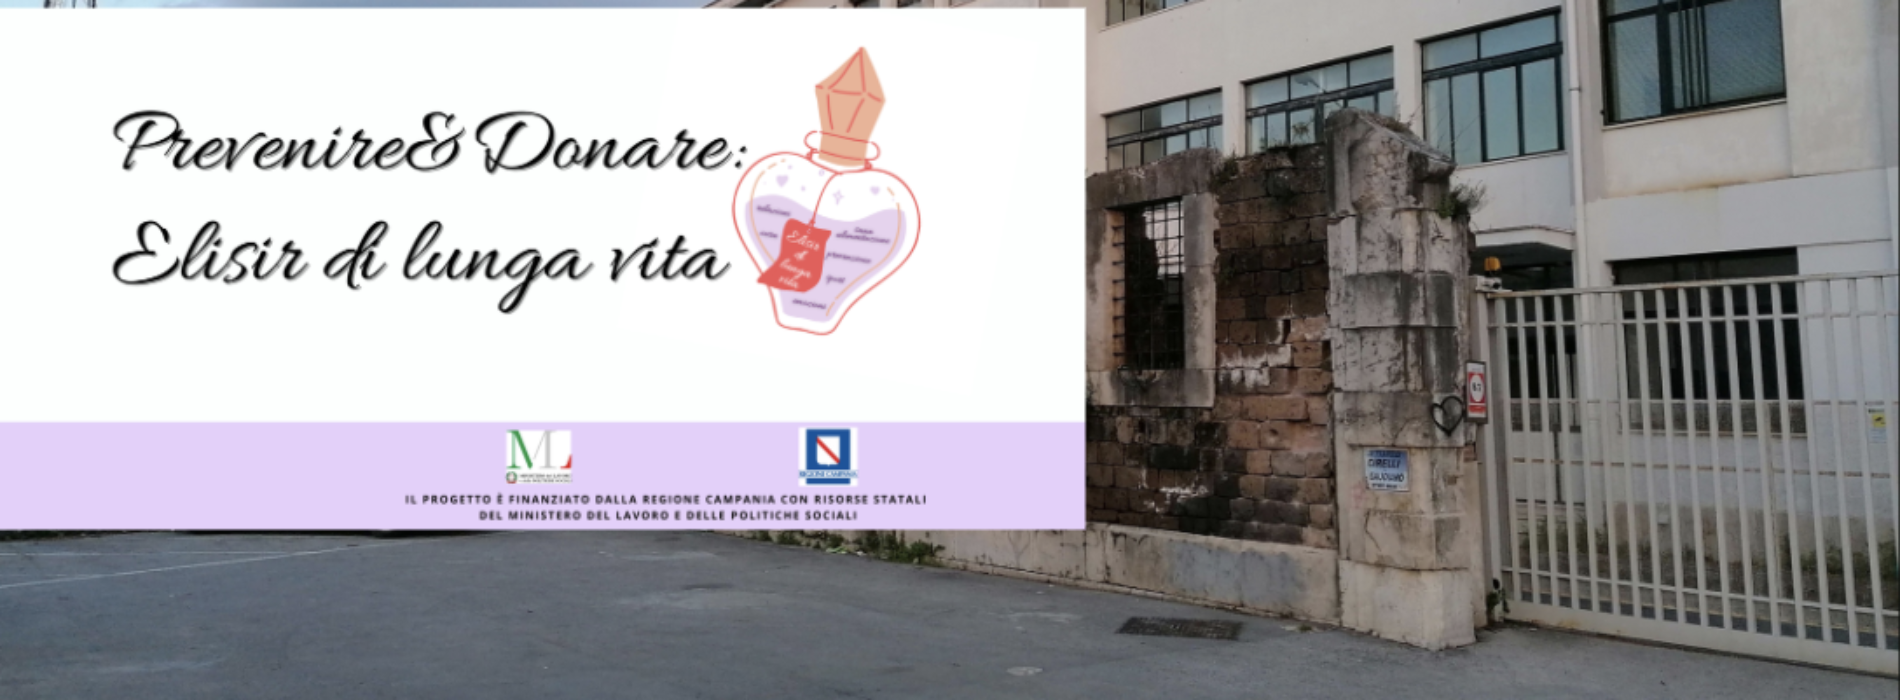 Prevenire e donare, c’è il seminario online al Pizzi di Capua